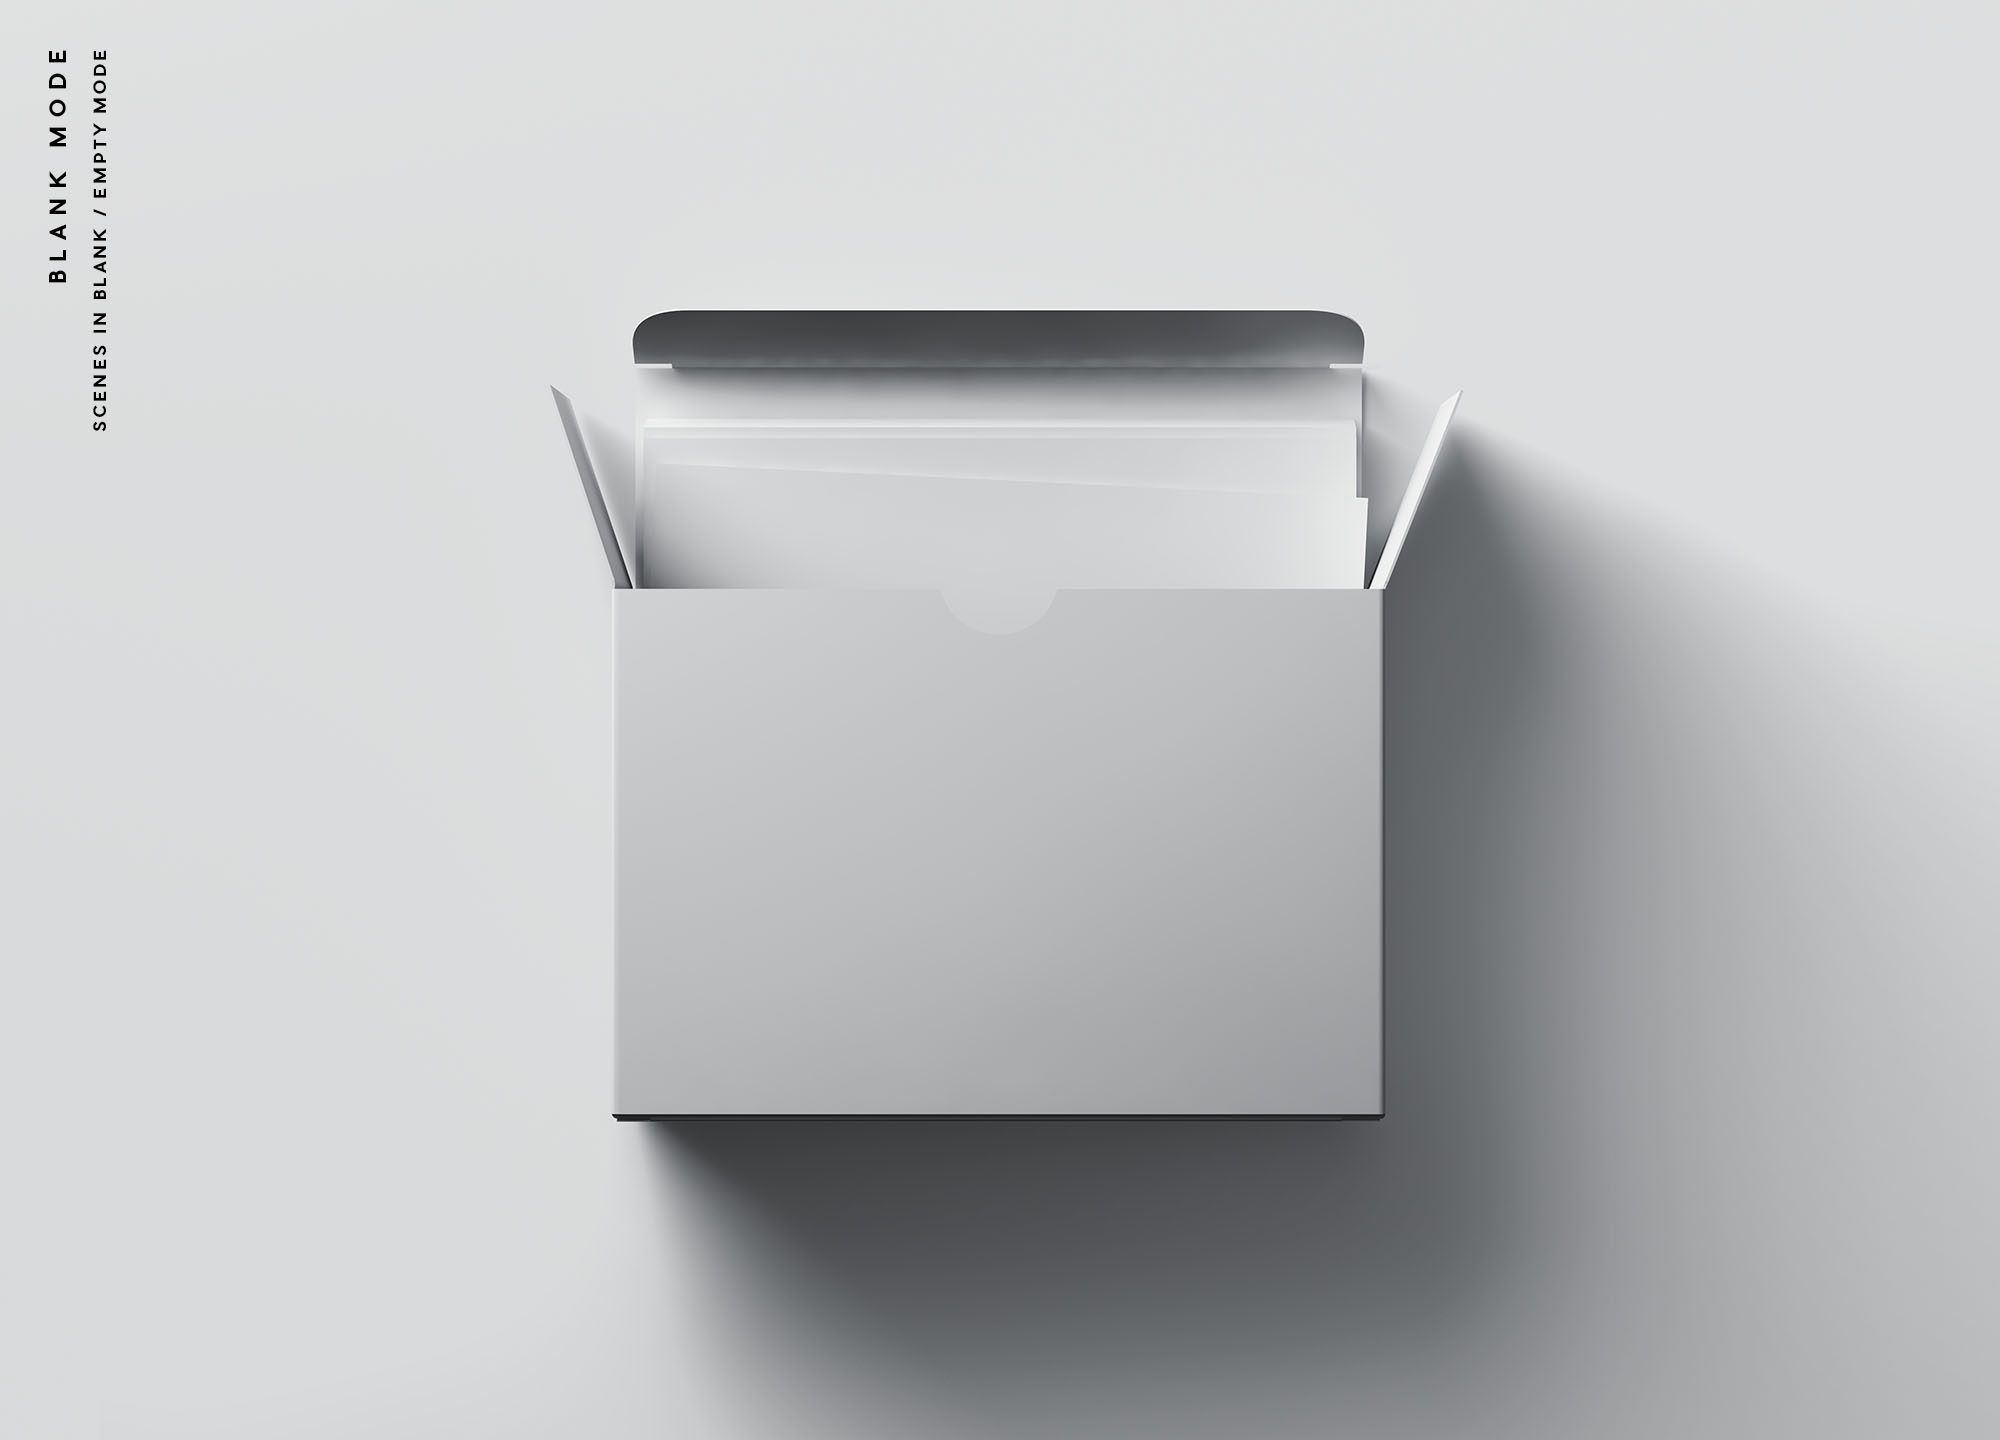 卡片包装盒外观设计效果图第一素材精选 Card Box Mockup插图(8)